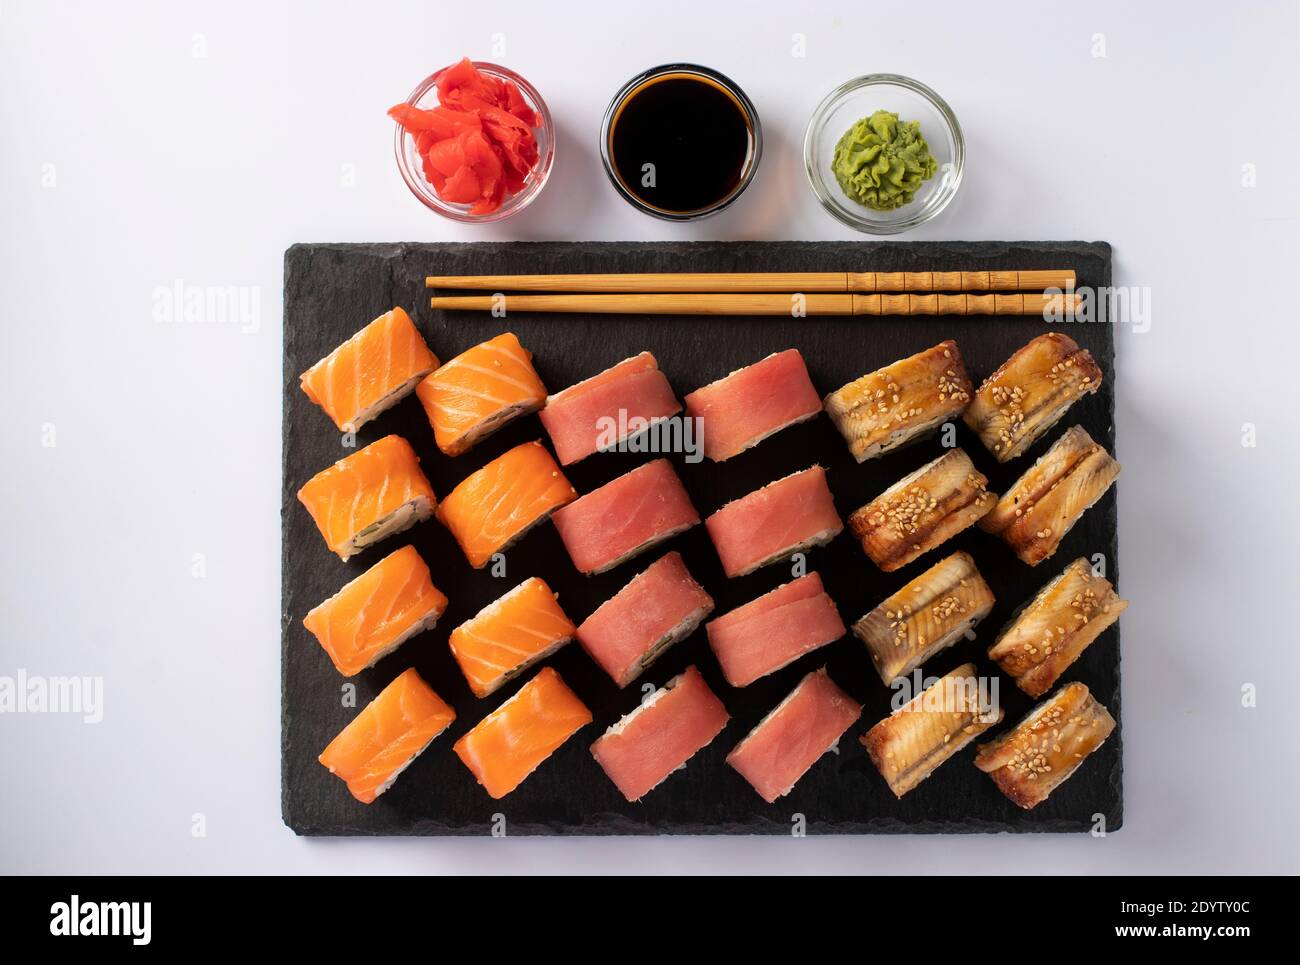 Cucina asiatica con sushi di salmone, tonno e anguilla con formaggio philadelphia su una tavola di ardesia su sfondo bianco. Vista dall'alto Foto Stock